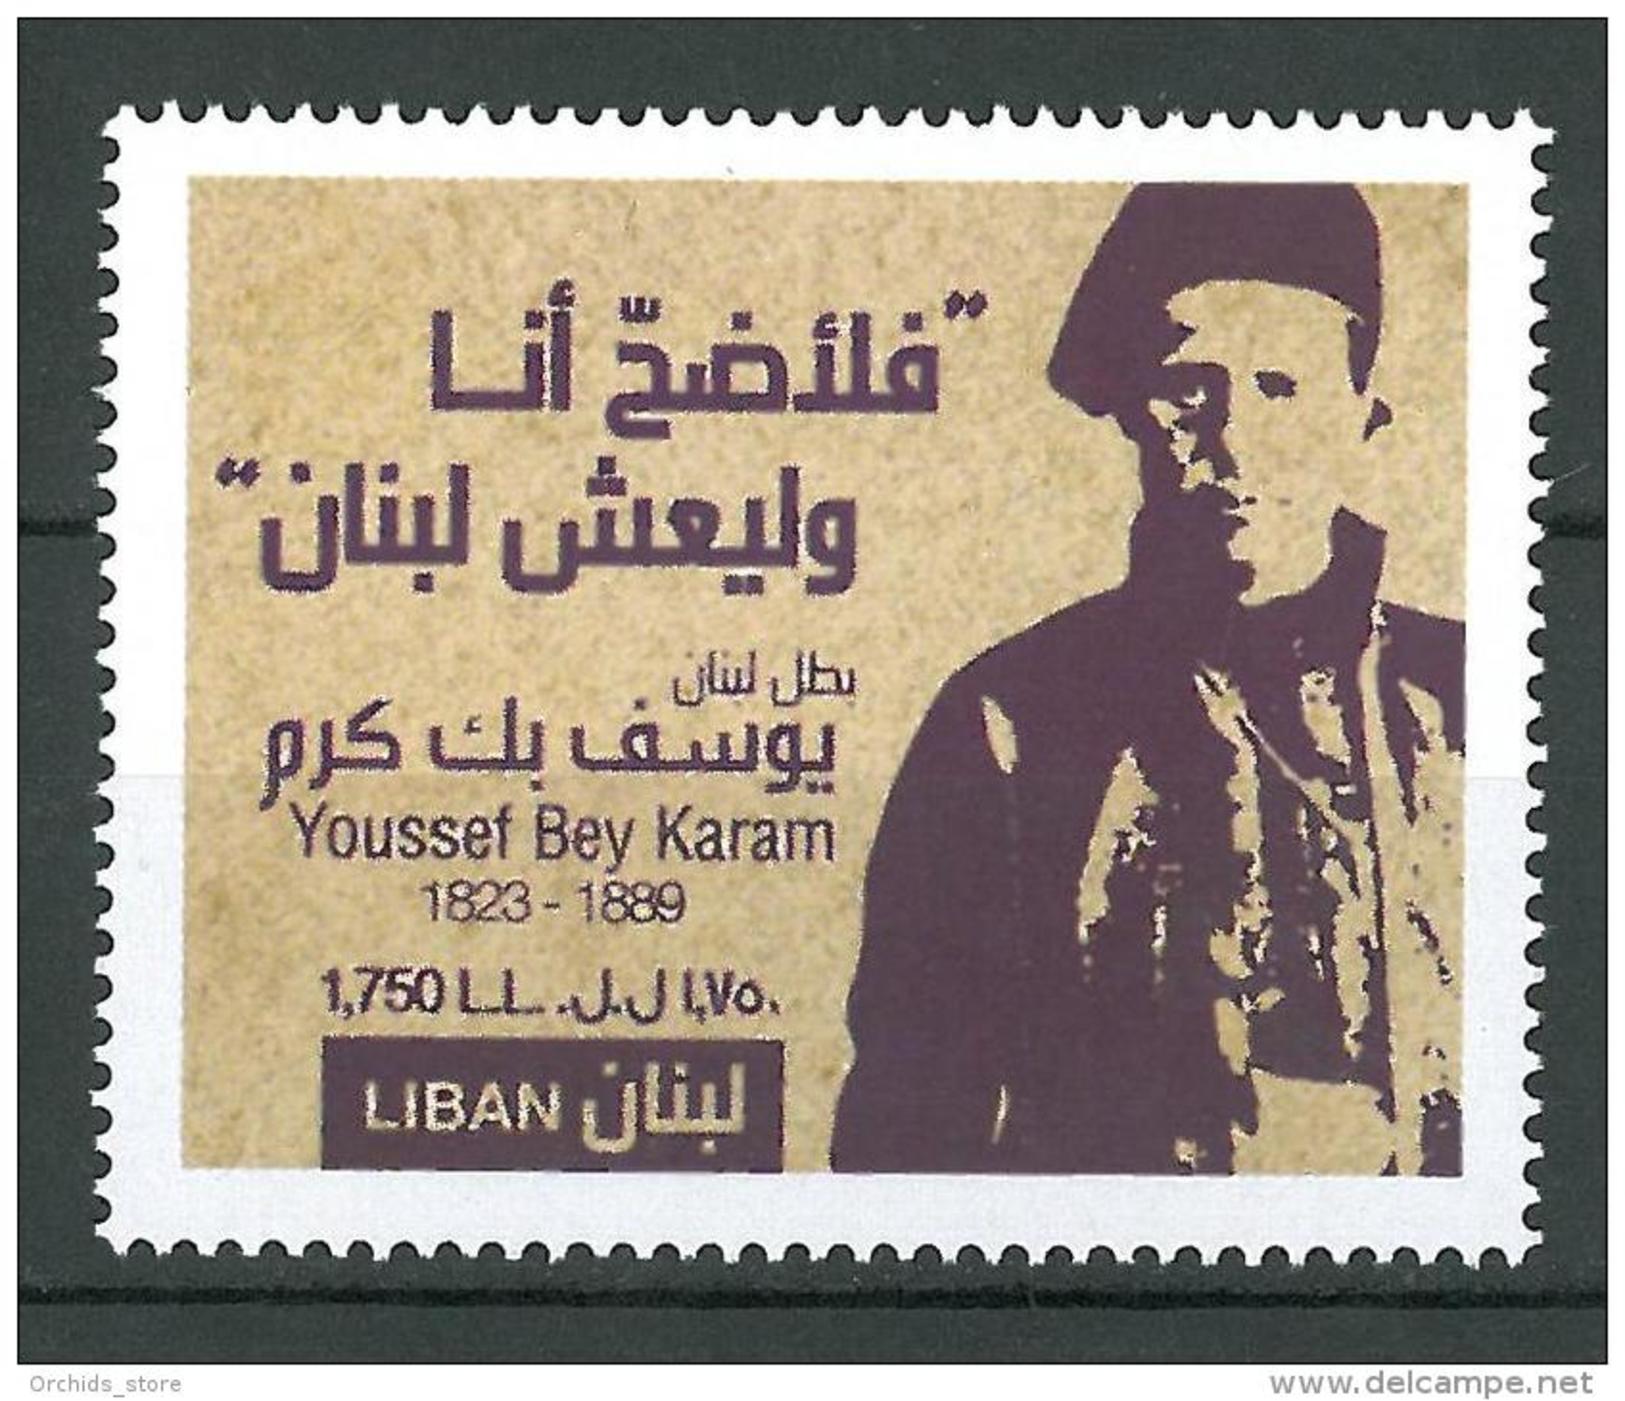 Lebanon 2014 New Stamp MNH - Youssef Bek Karam - Lebanese Revolution Hero Against Ottomans - Lebanon